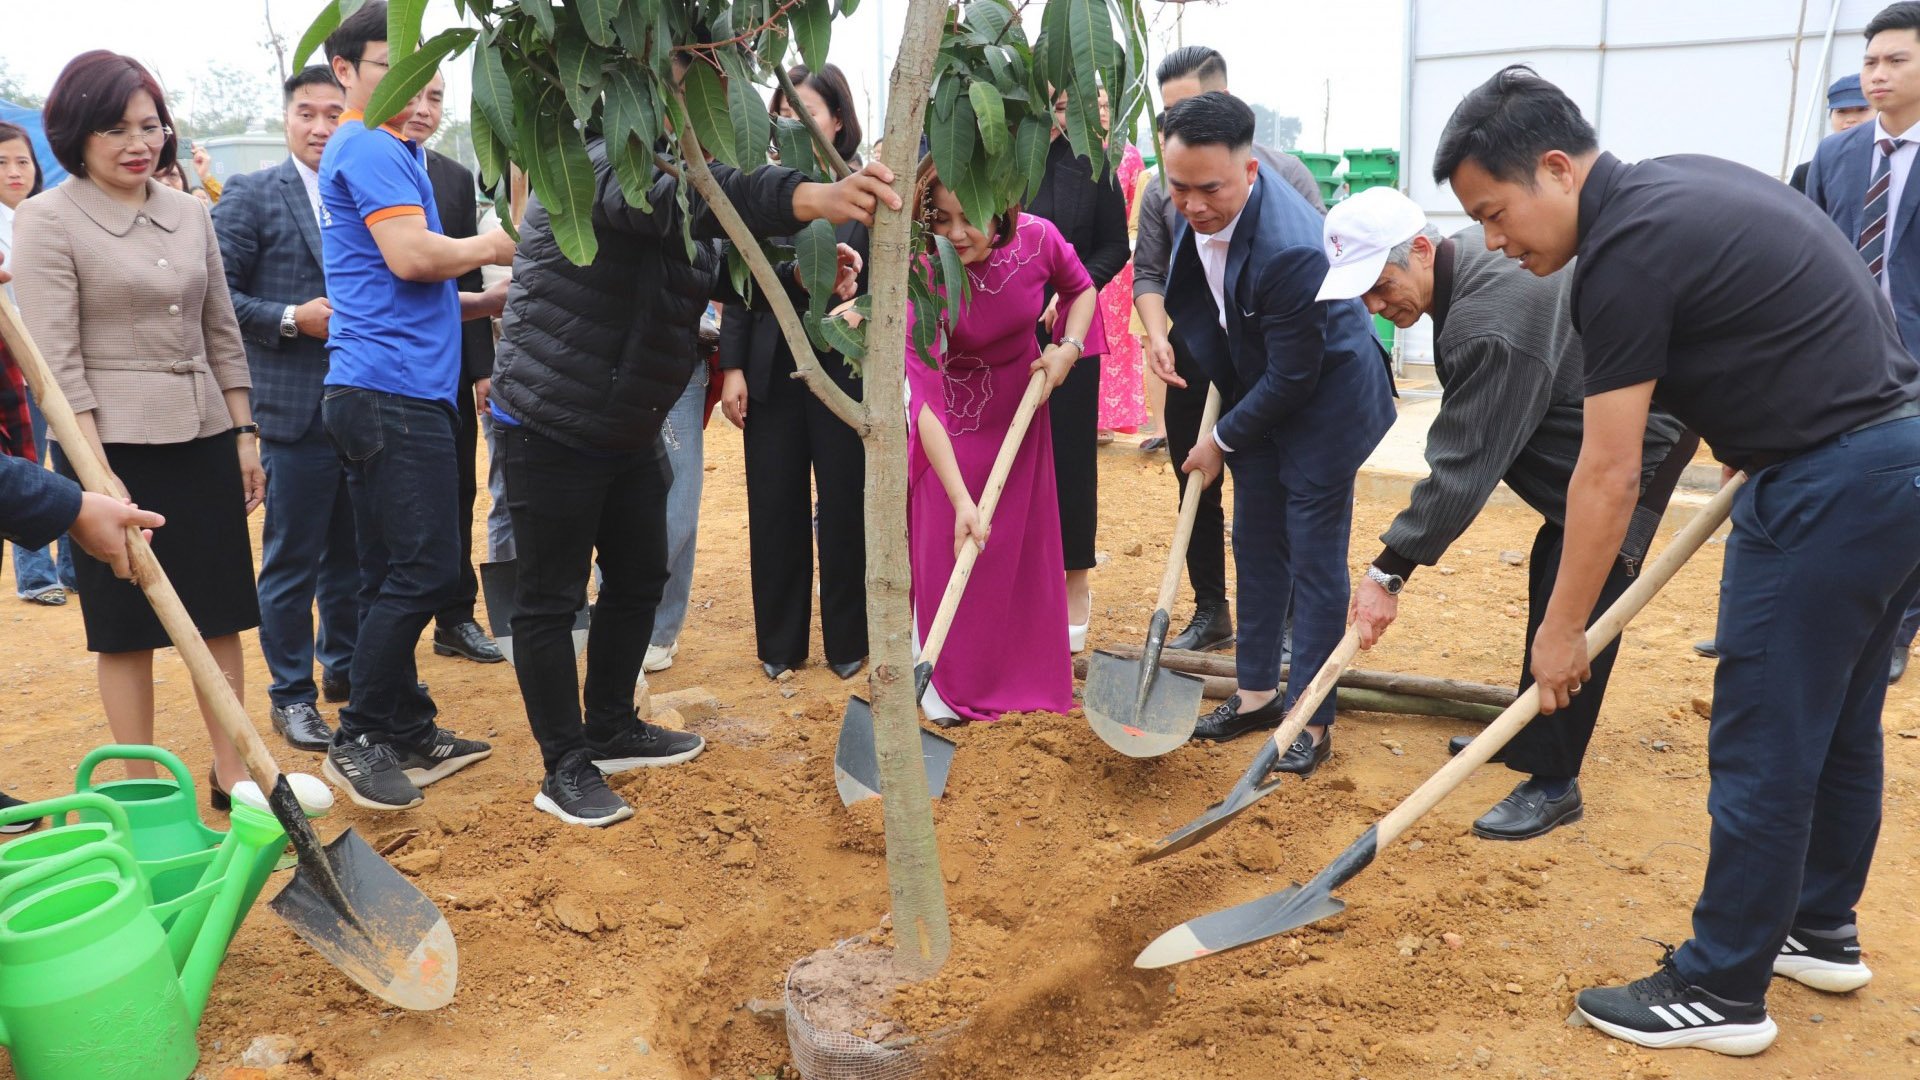 Tạp chí Tài nguyên và Môi trường phát động lễ trồng cây chương trình “Trường Xanh” tại Đại học Quốc gia Hà Nội